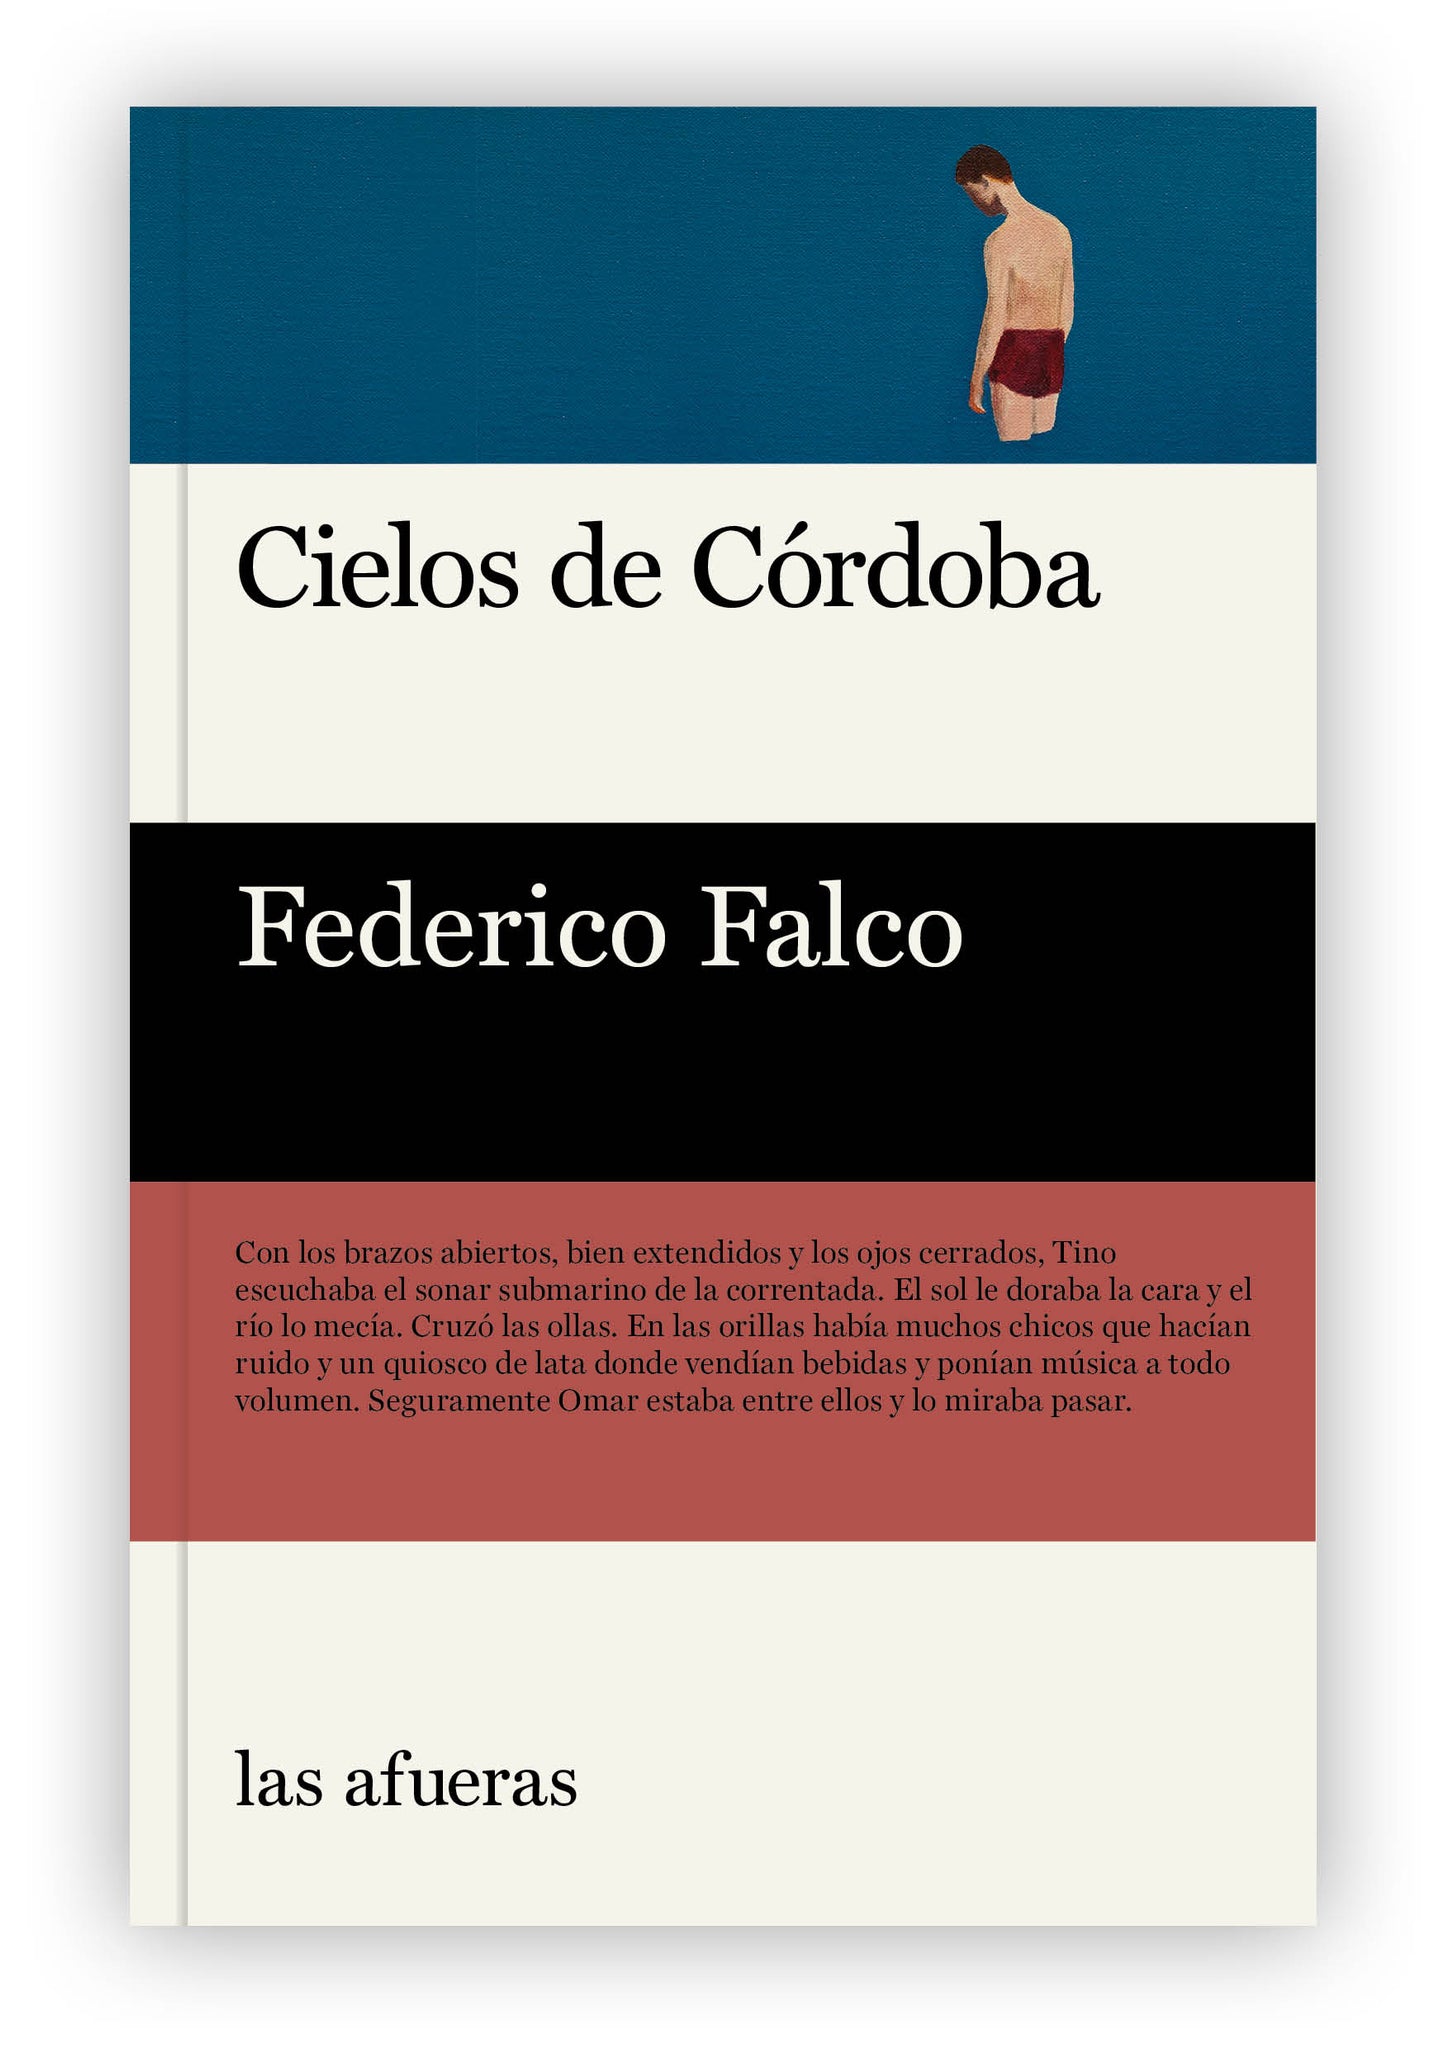 "Cielos de Córdoba", de Federico Falco